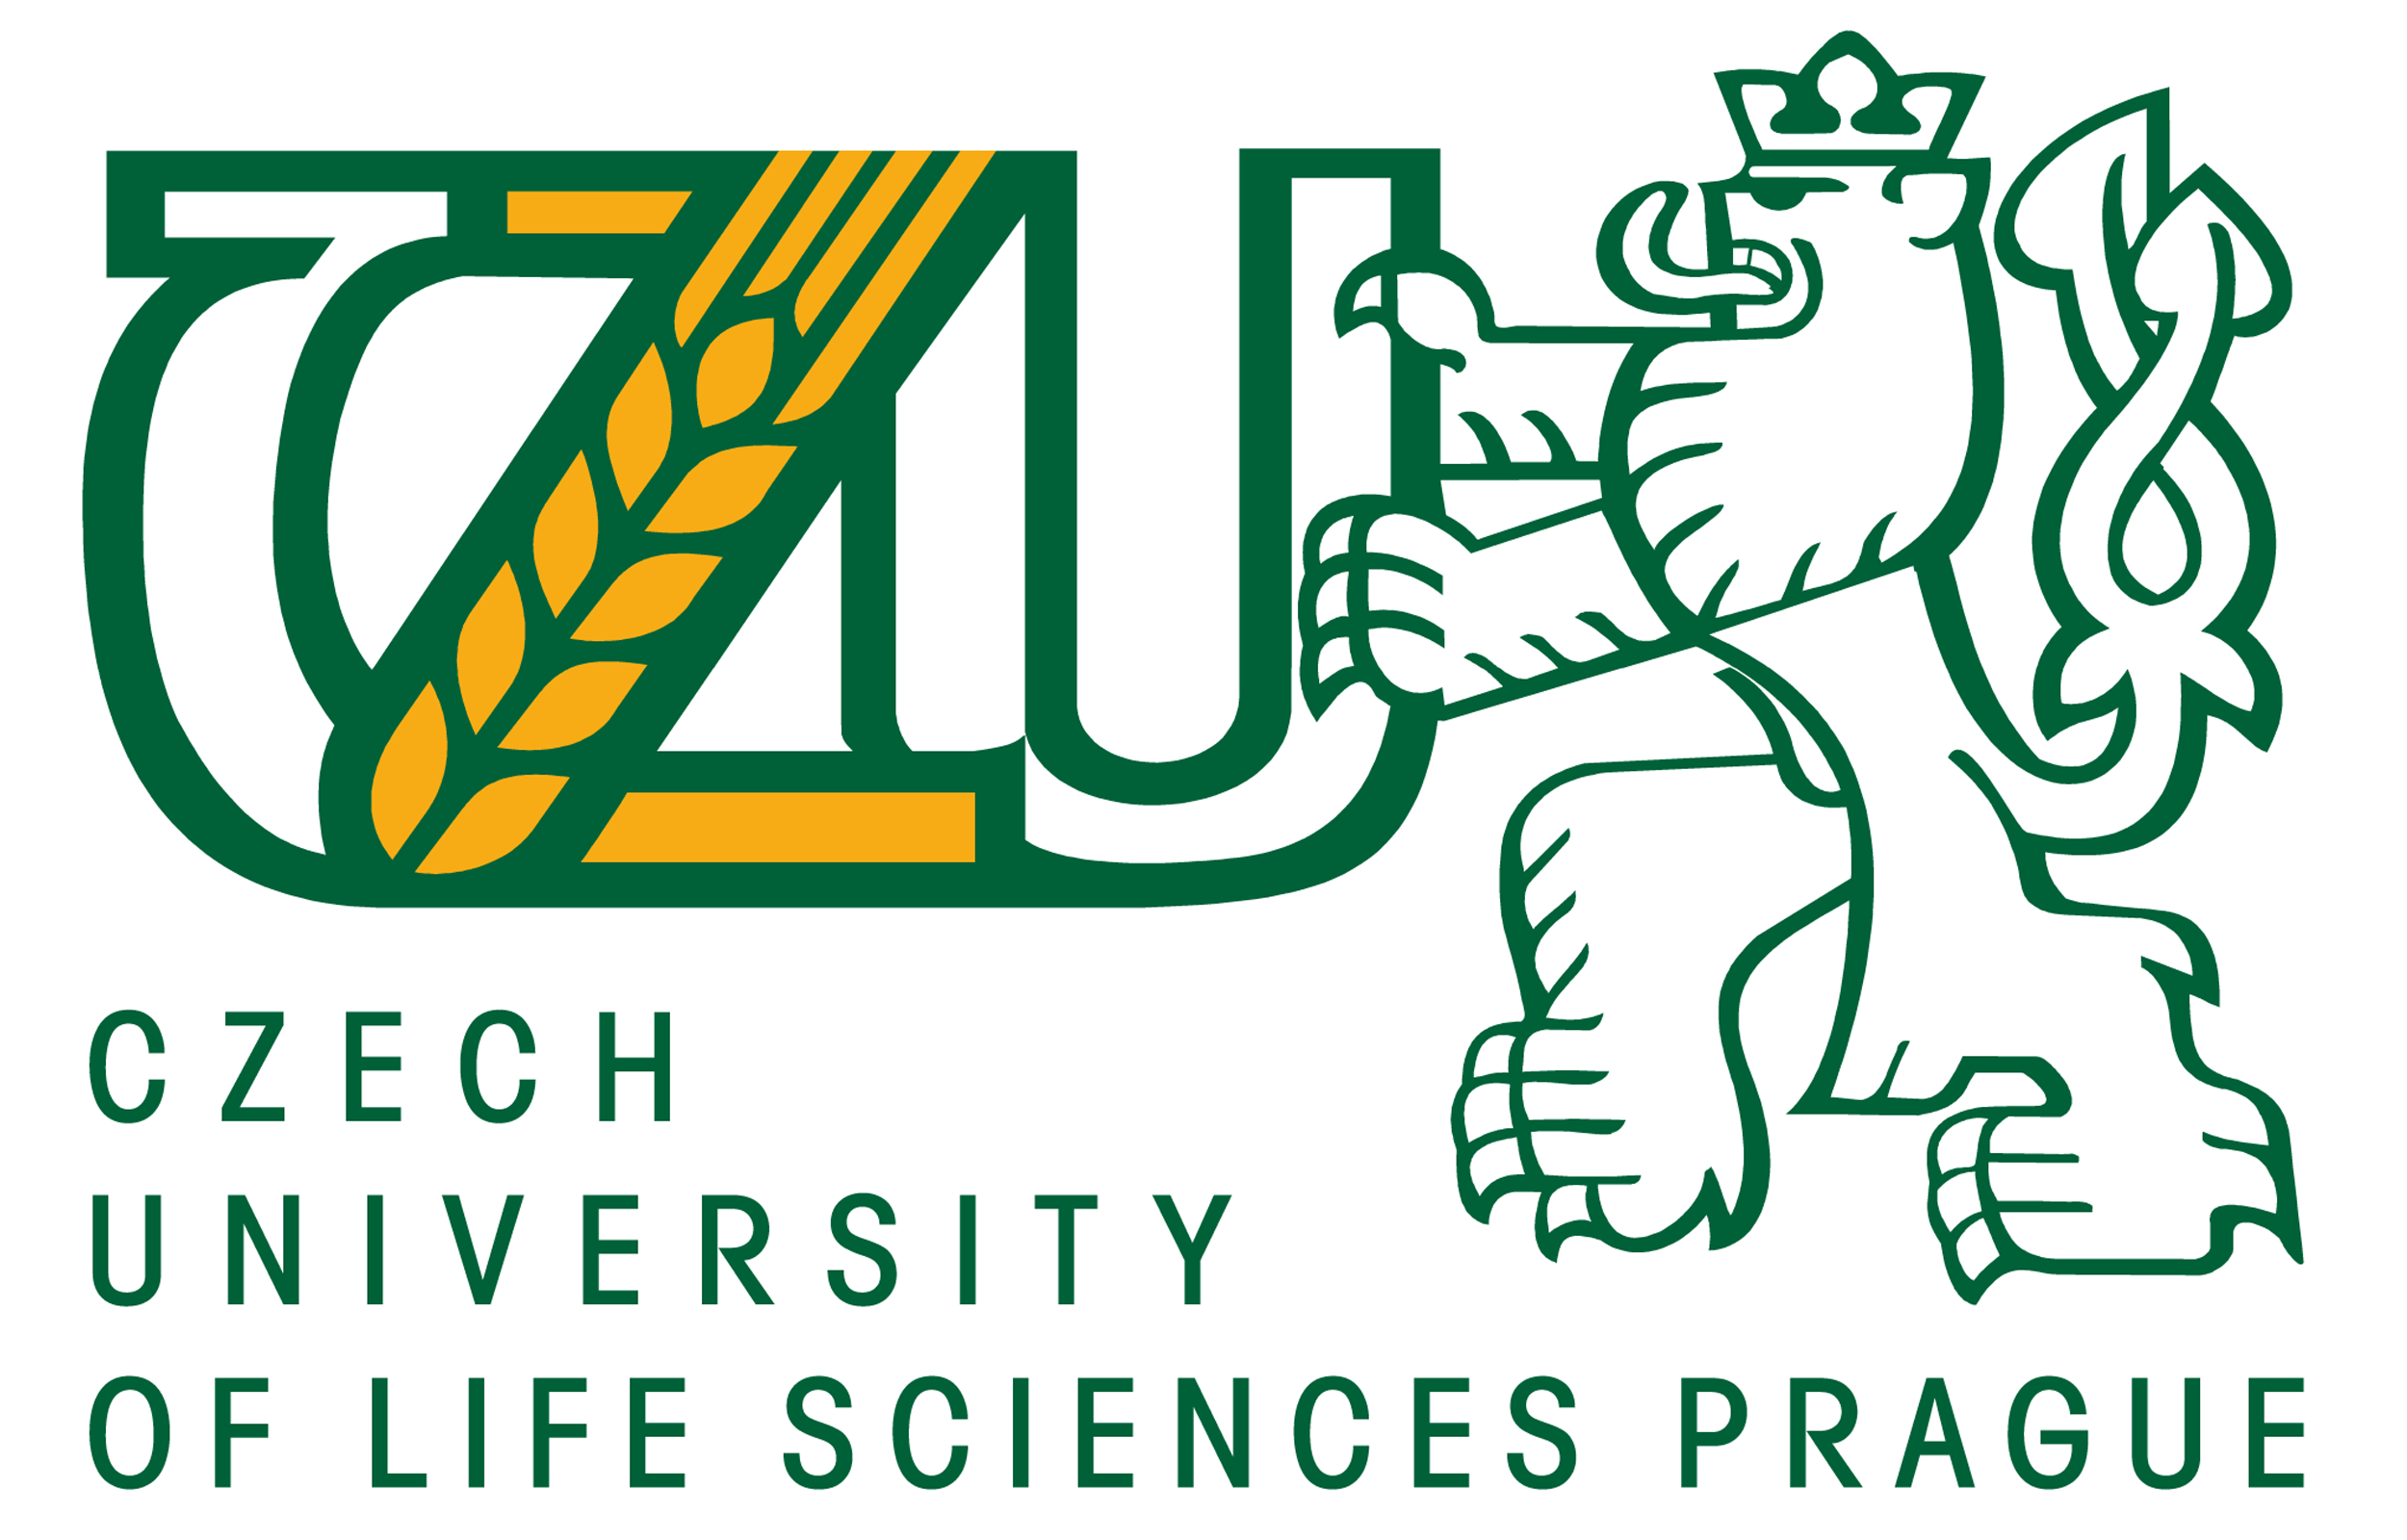 Czech University of Life Sciences ile ilgili görsel sonucu